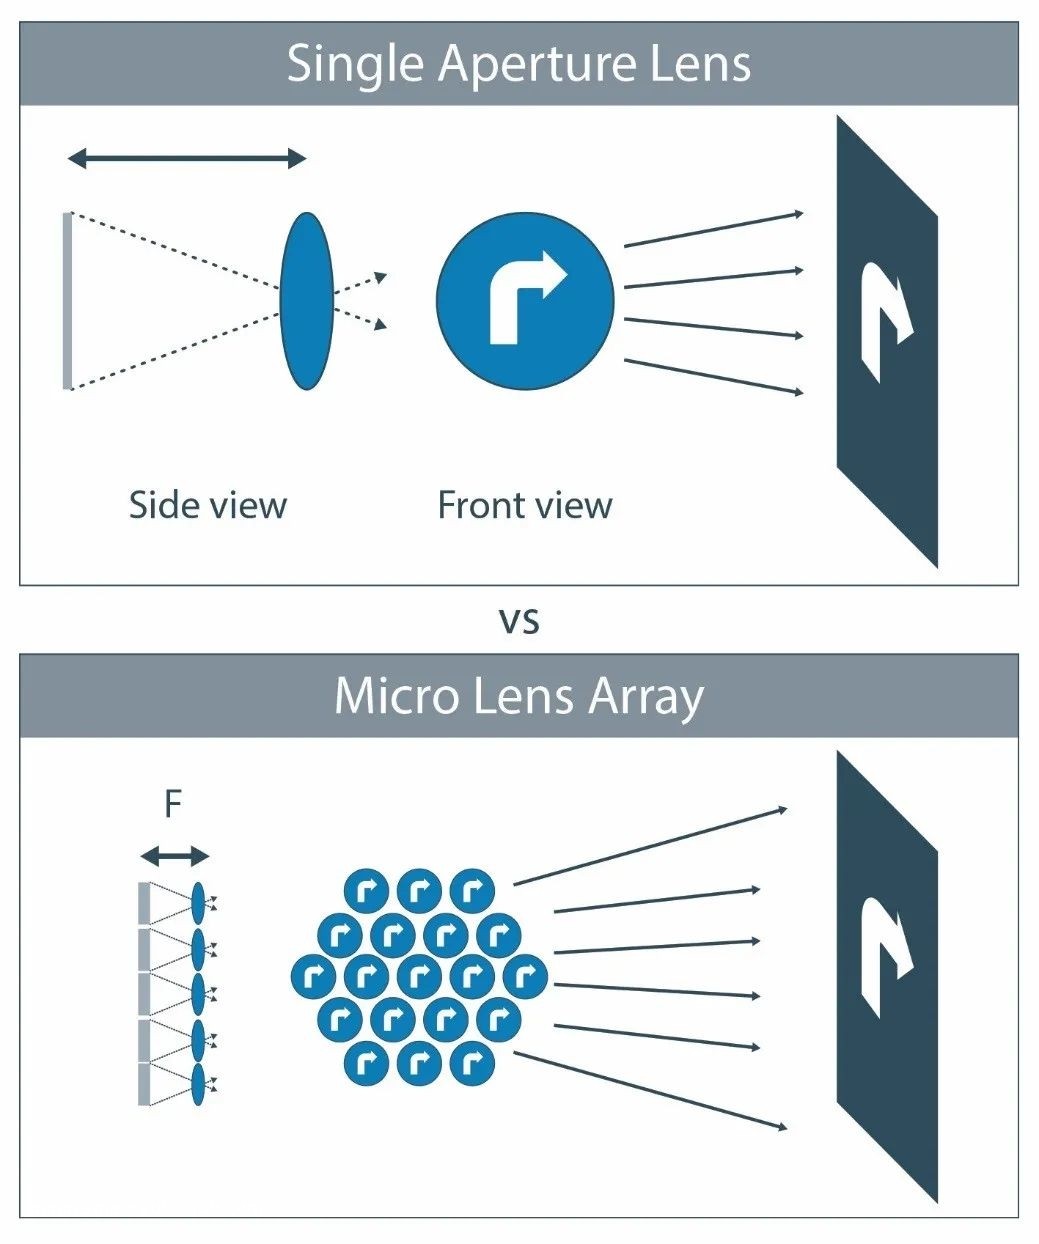 技术文章 |新的微透镜阵列技术如何促进汽车投影照明应用